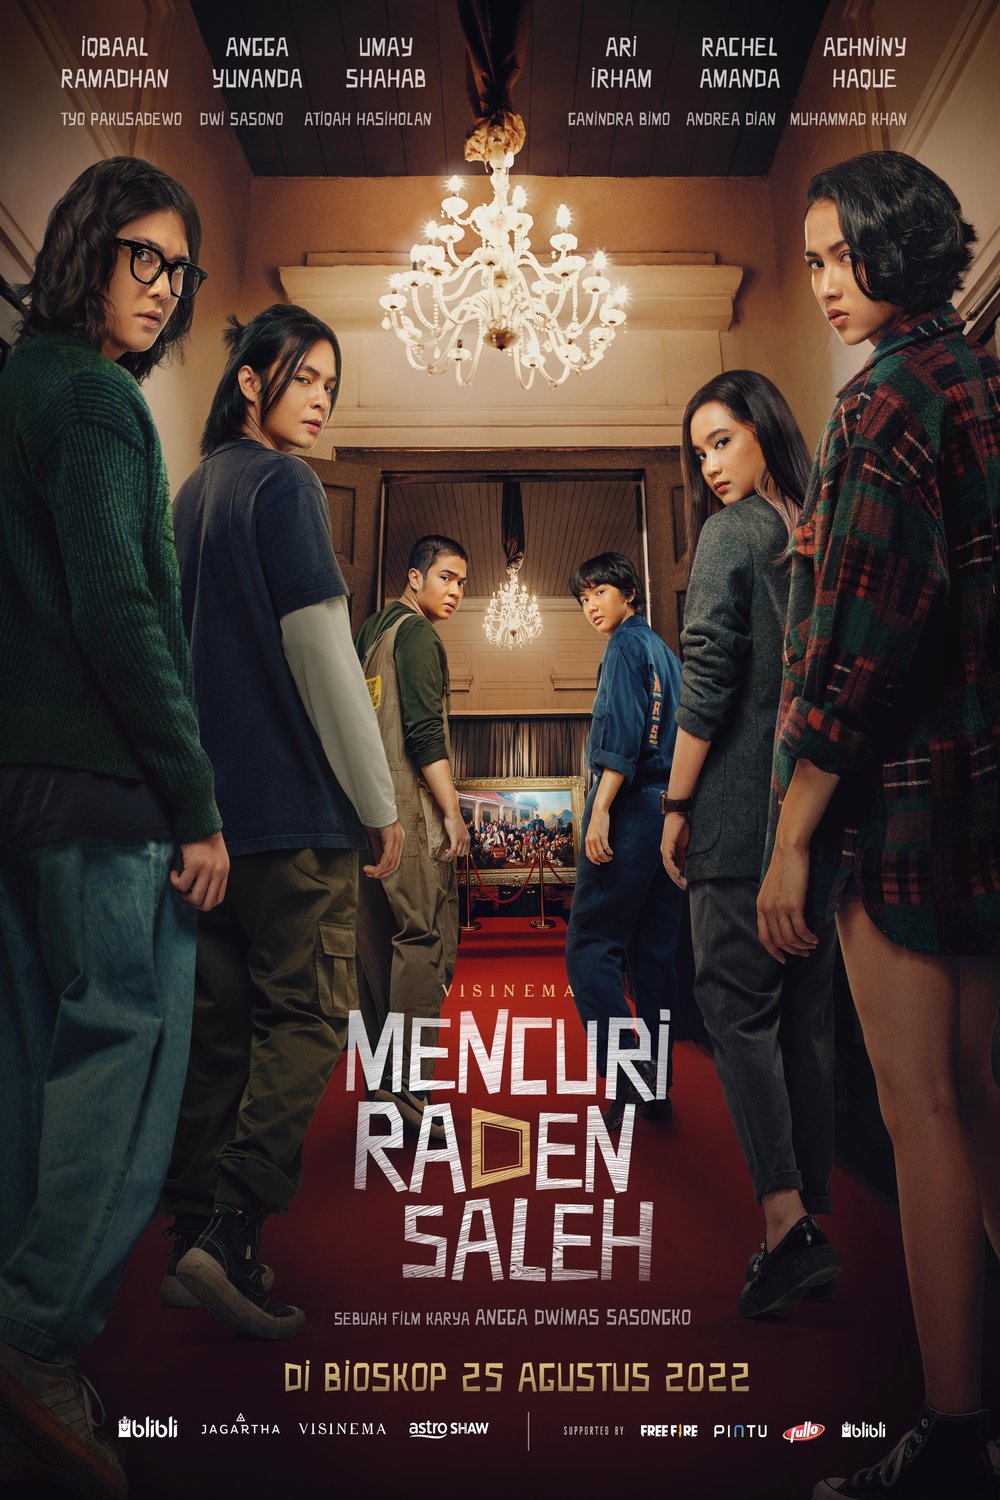 L'affiche originale du film Stealing Raden Saleh en Indonésien